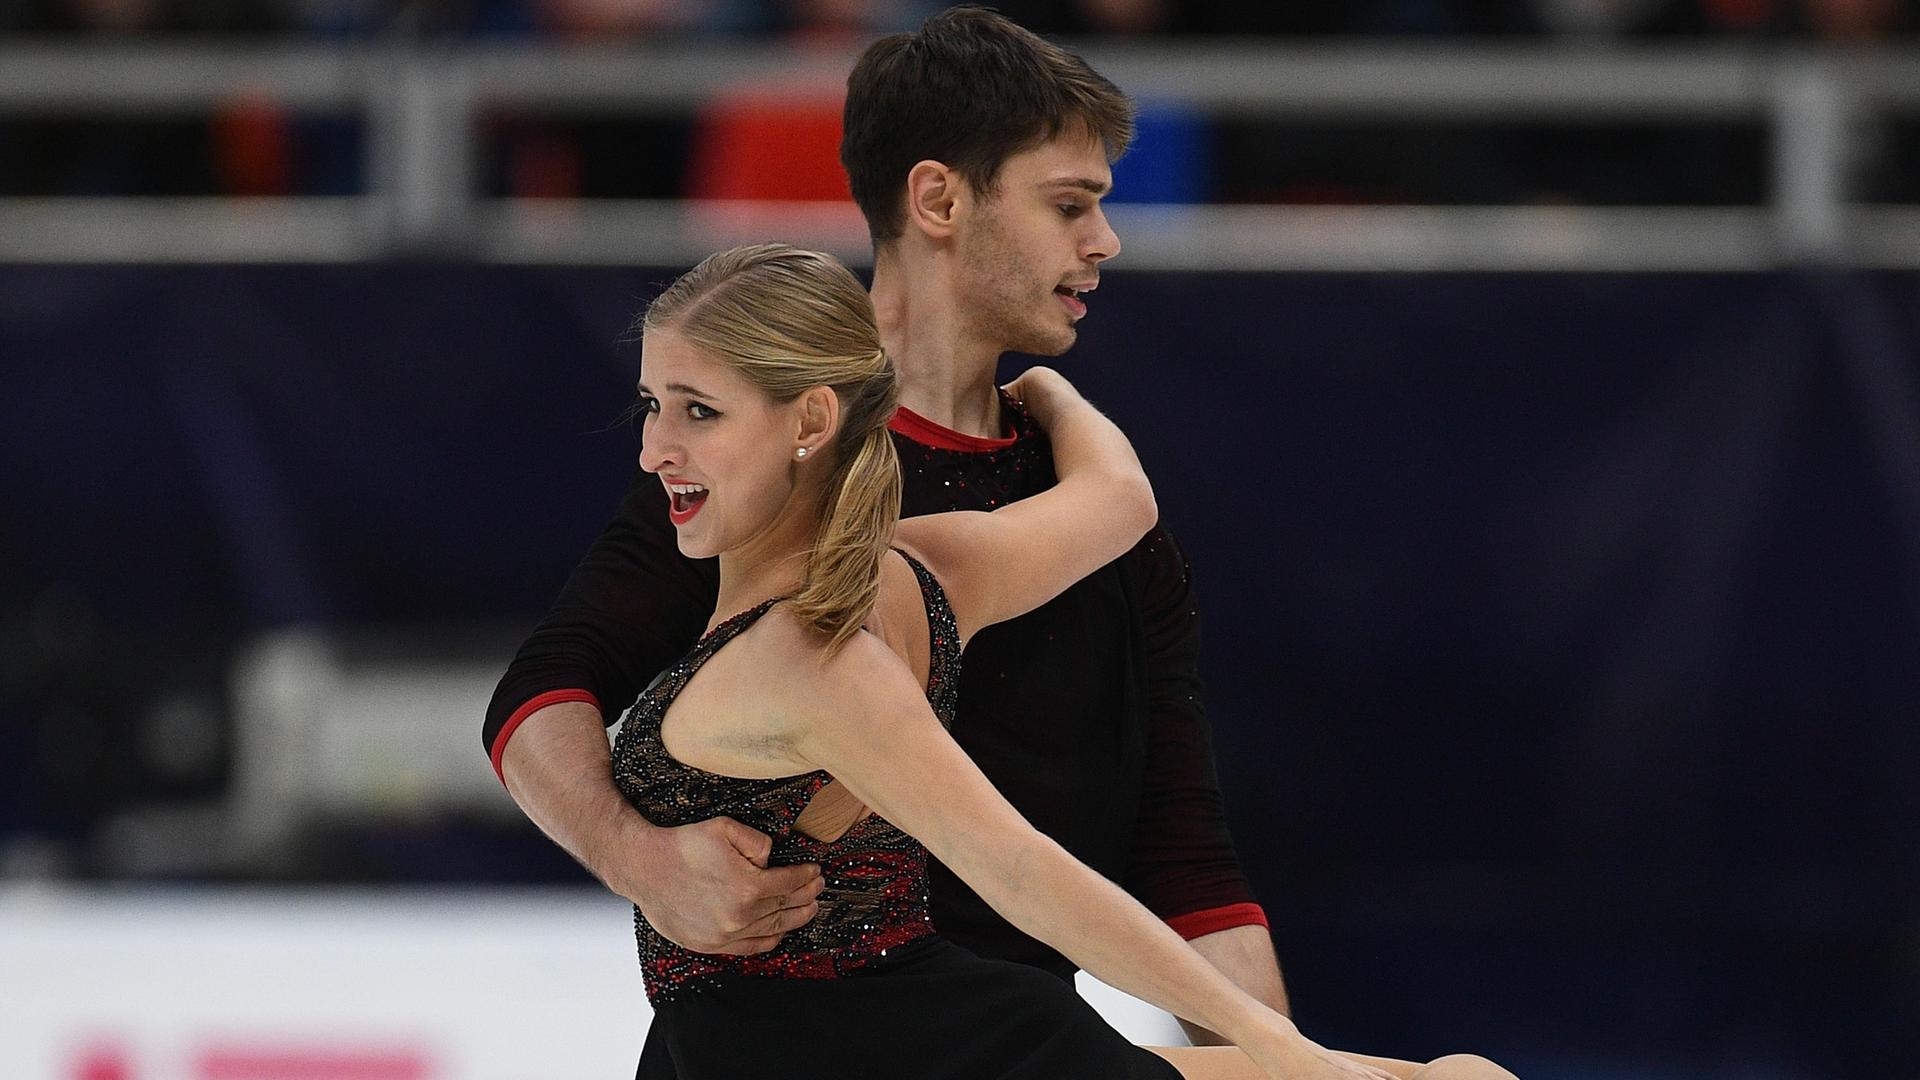 Fabienne Hase und Nolan Seegert beim Rostelecom Cup ISU Grand Prix in der Megasport Arena in Moskau

